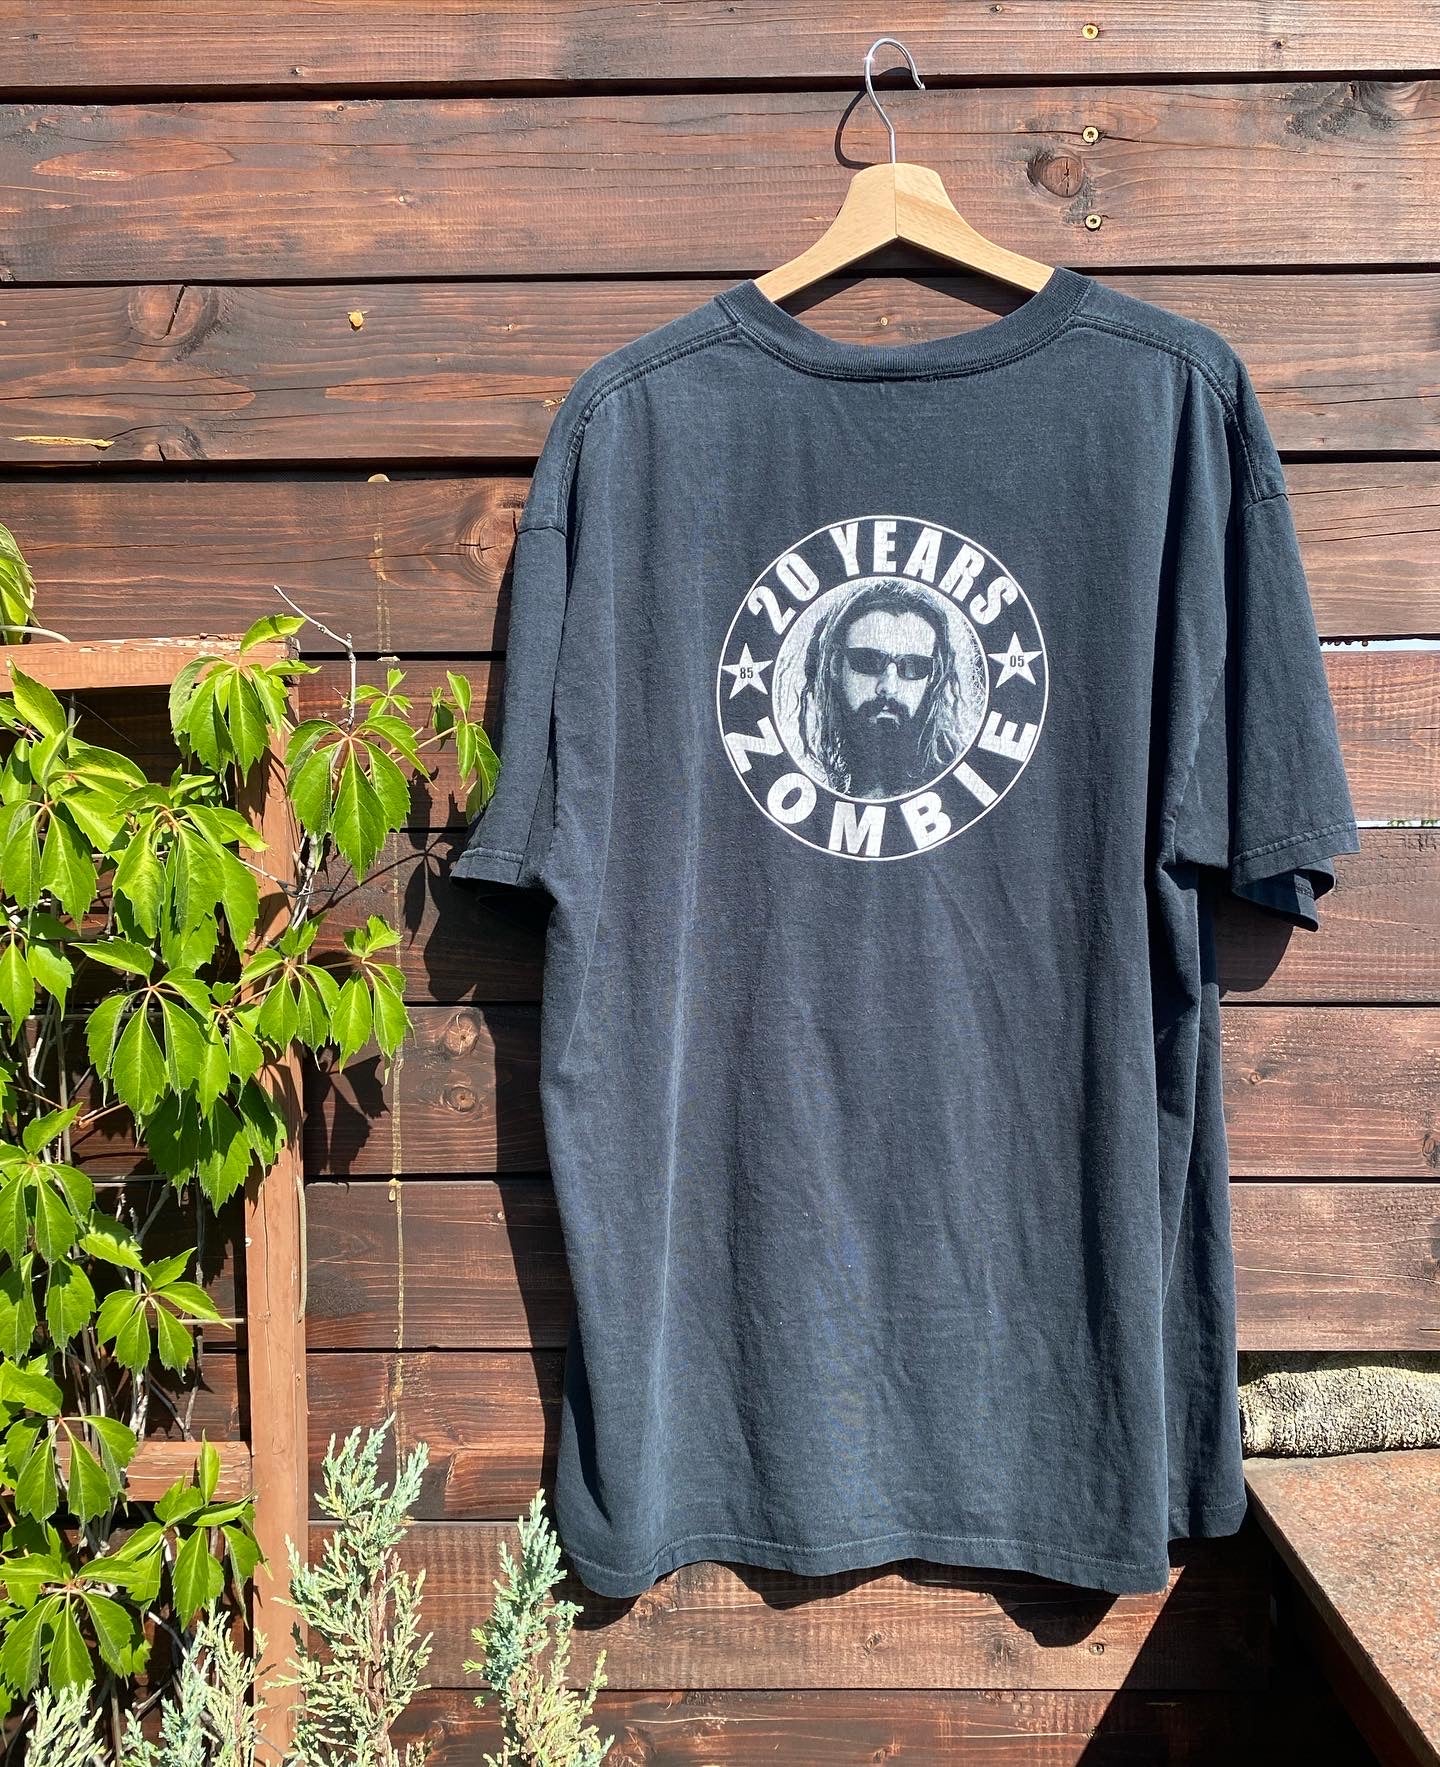 Vintage Rob Zombie "Next to Graveyard" tour t-shirt - size XXL